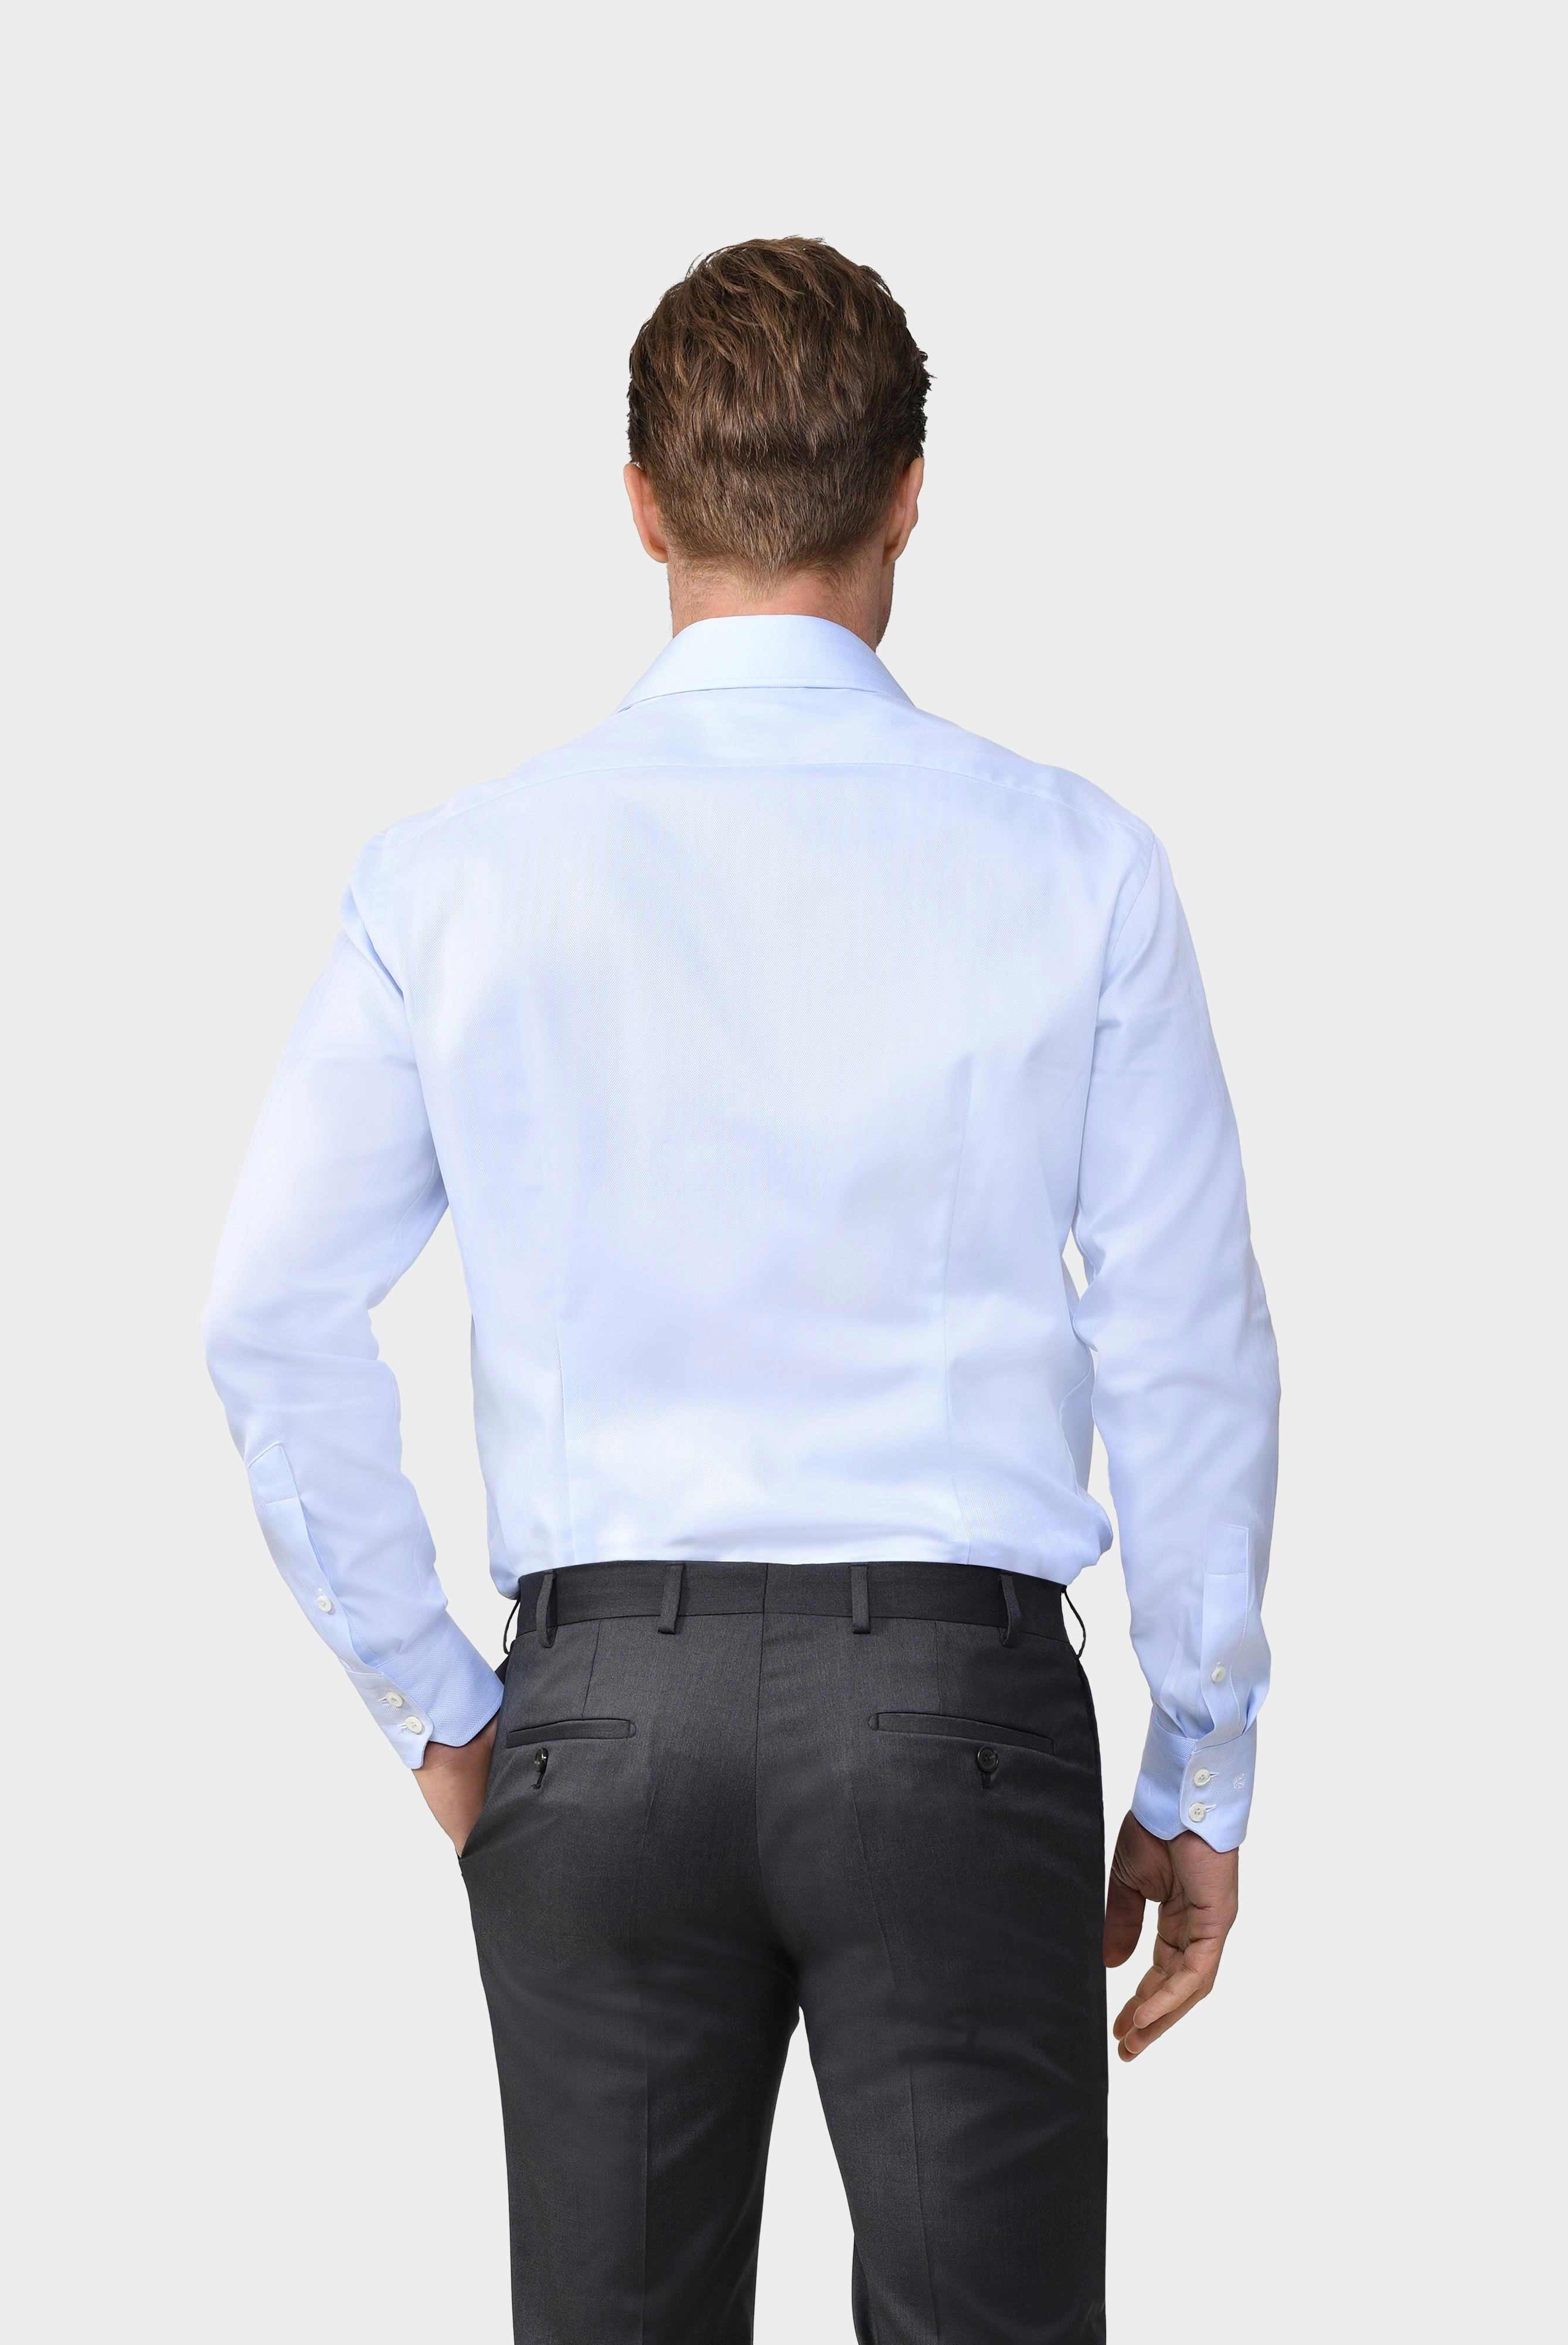 Business Hemden+Twill Hemd mit Fischgrat Tailor Fit+20.2020.AV.102501.710.39